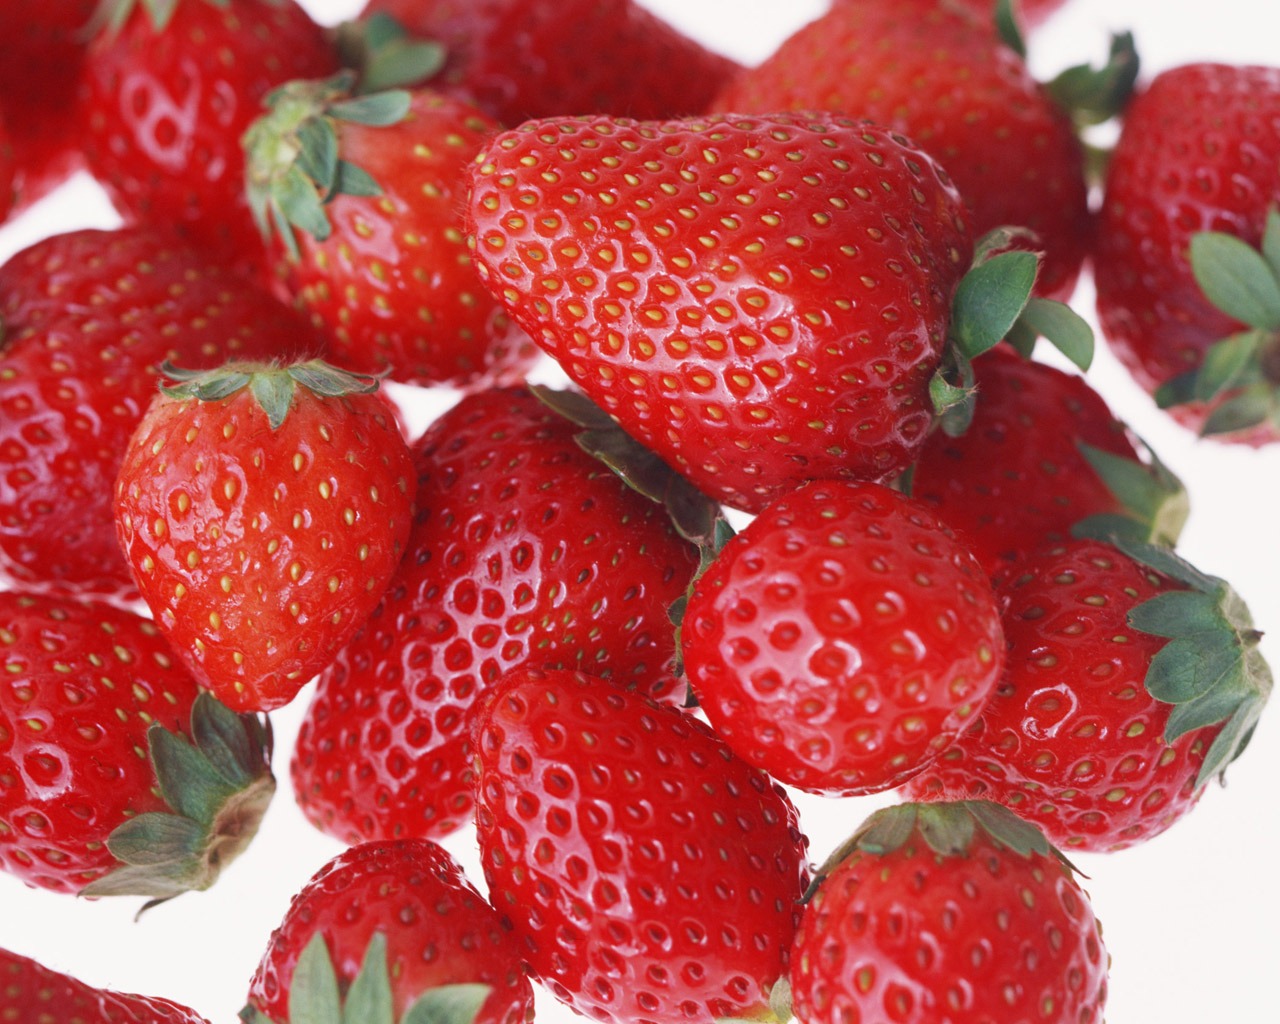 Fond d'écran aux fraises fraîches #1 - 1280x1024